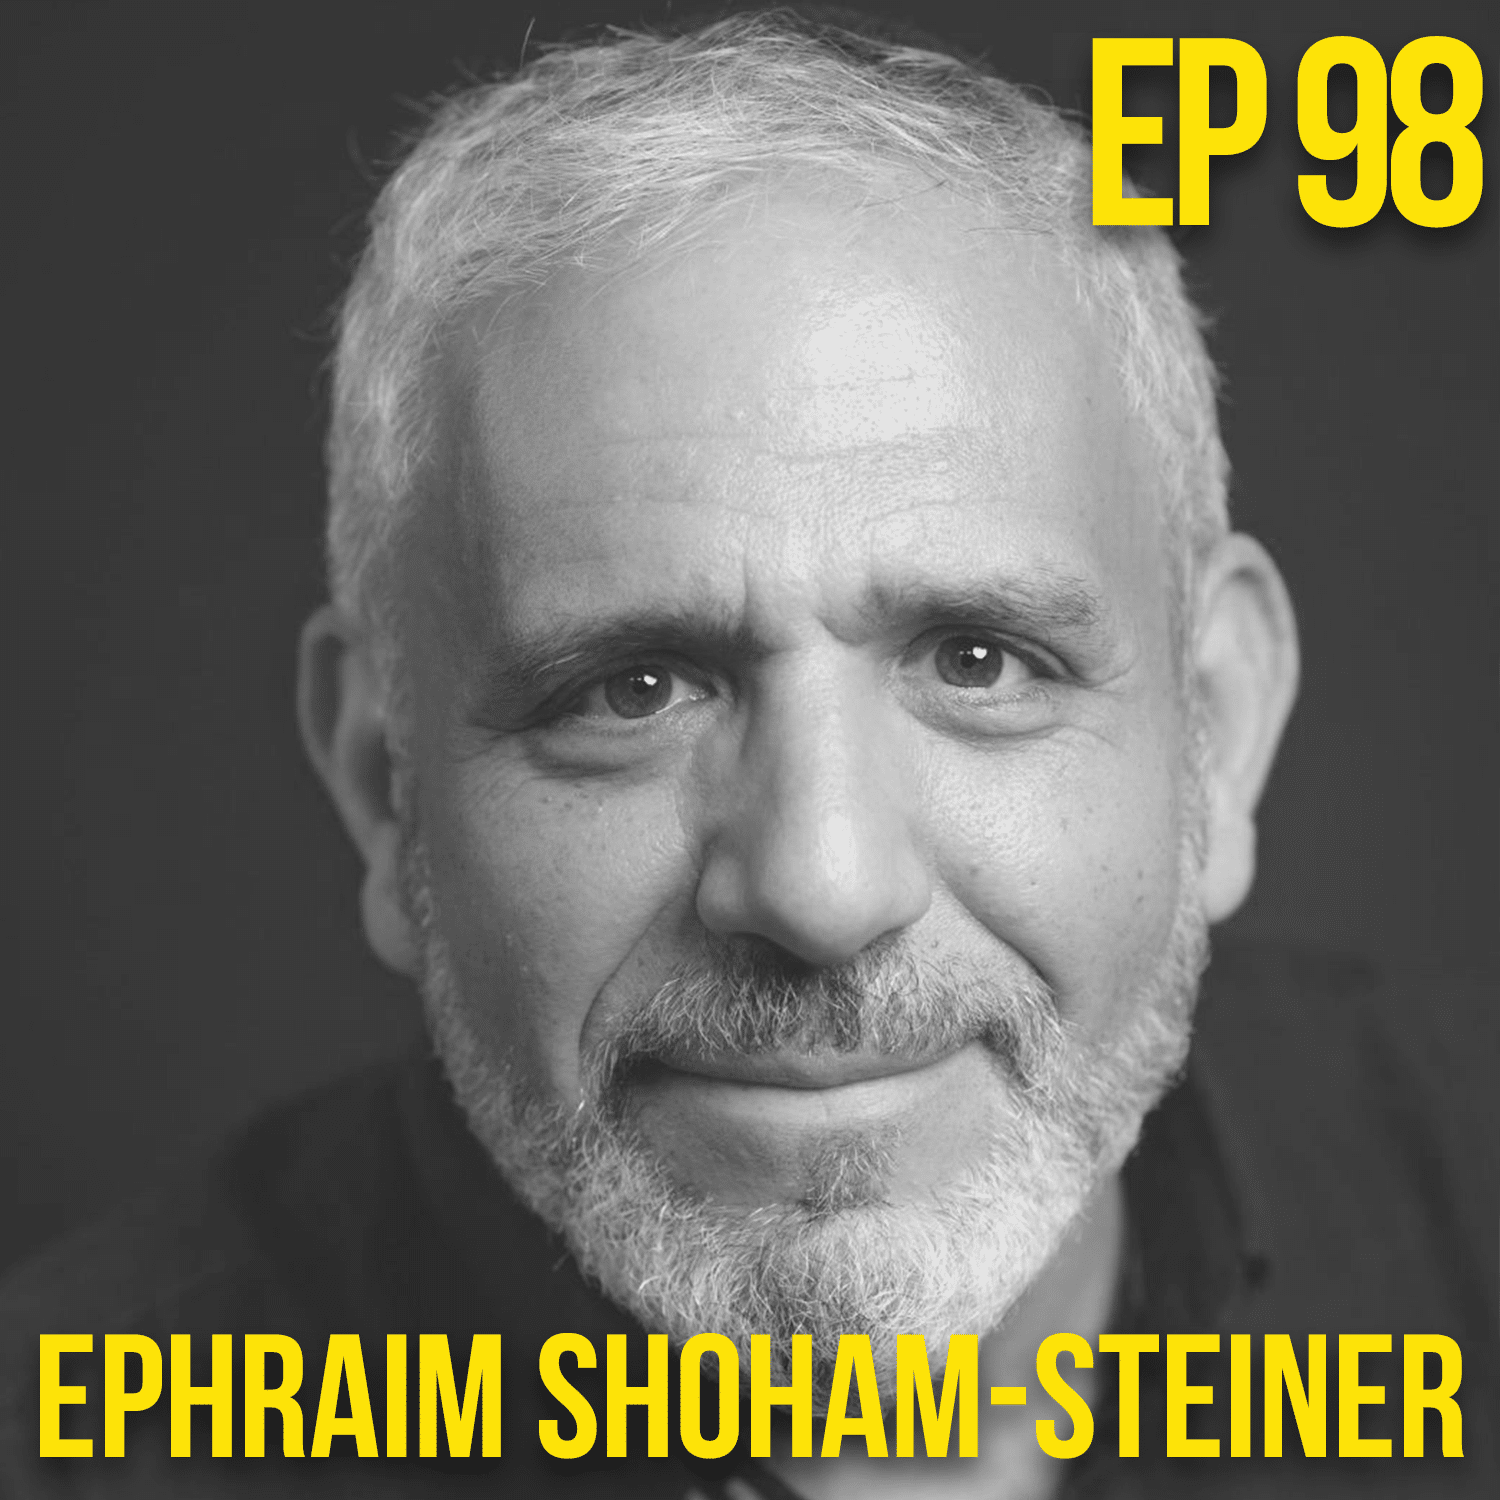 Ephraim Shoham-Steiner